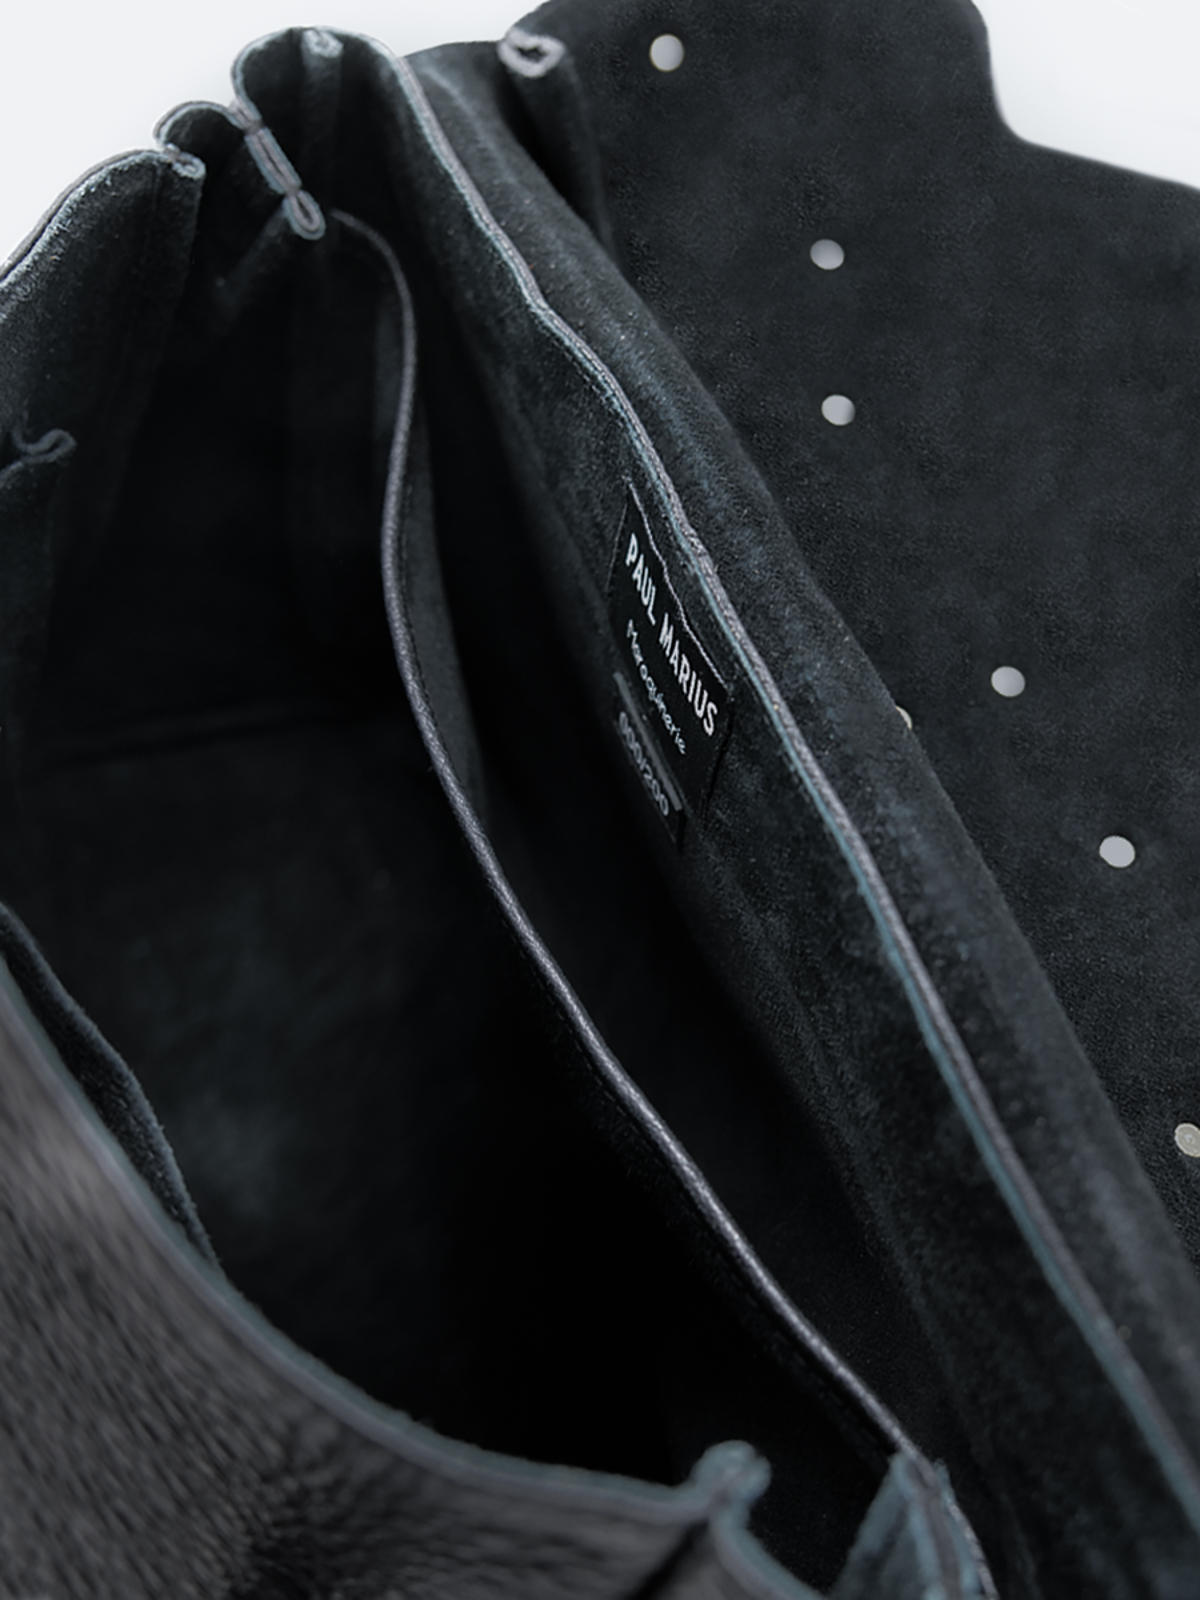 black-leather-shoulder-bag-interior-view-picture-lasophistiquee-m-edition-noire-paul-marius-3760125356341